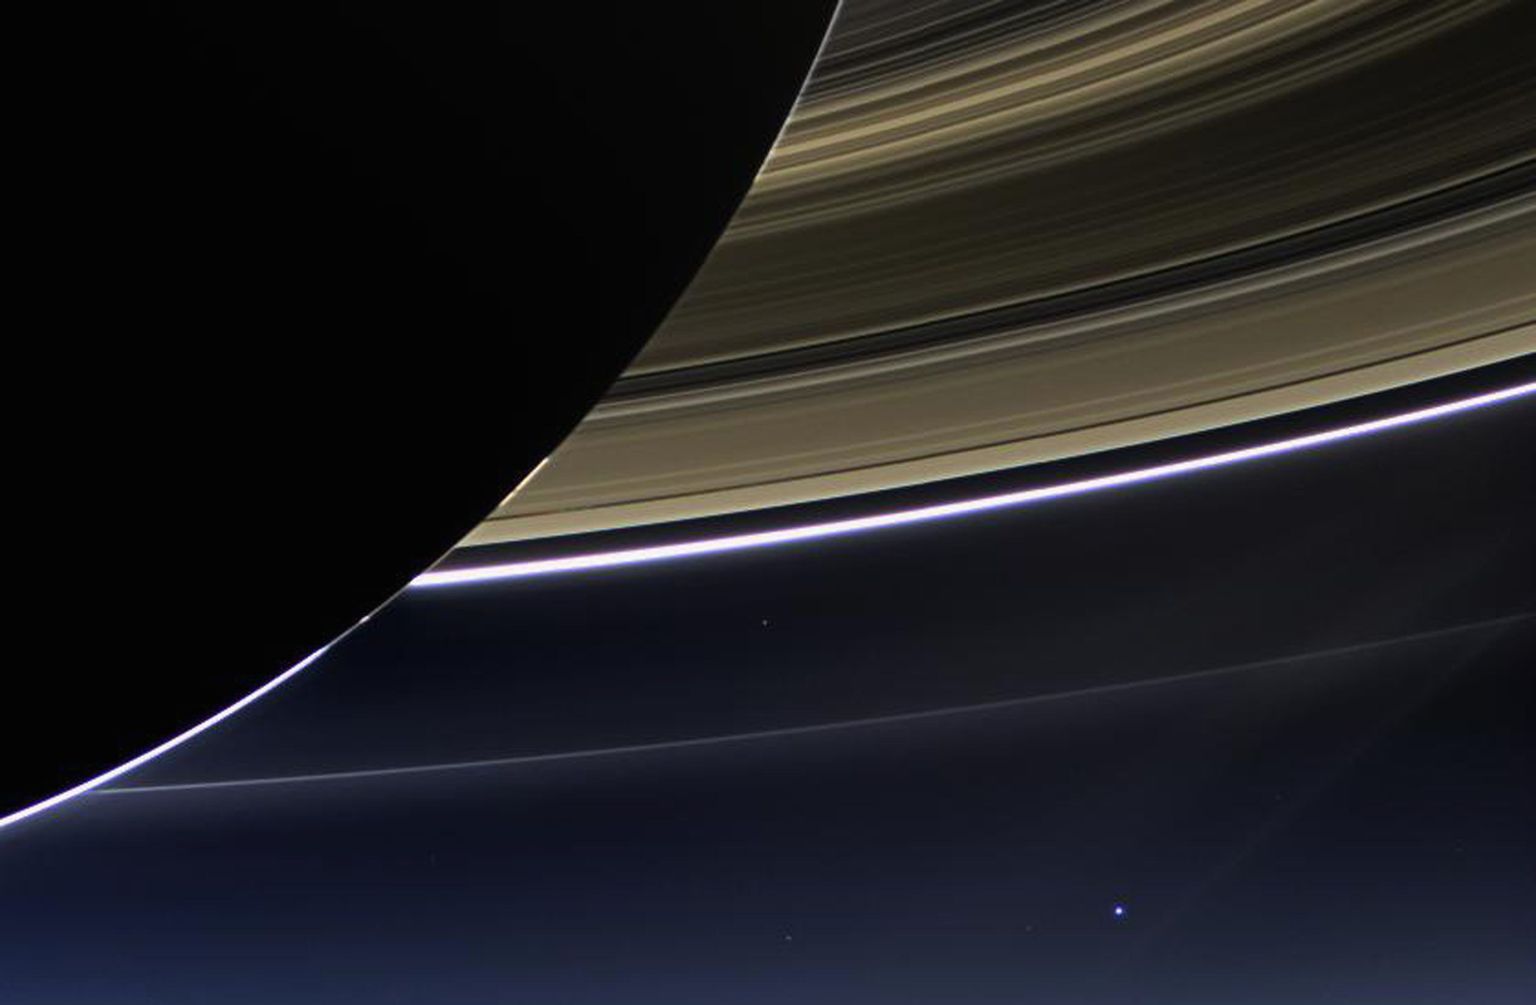 2017. aastal lõpetava Cassini missiooni foto Saturnist, selle ratastest ja kuust ning Maast. Maa paistab pildi keskosast veidi paremal väikese sinise täpina.